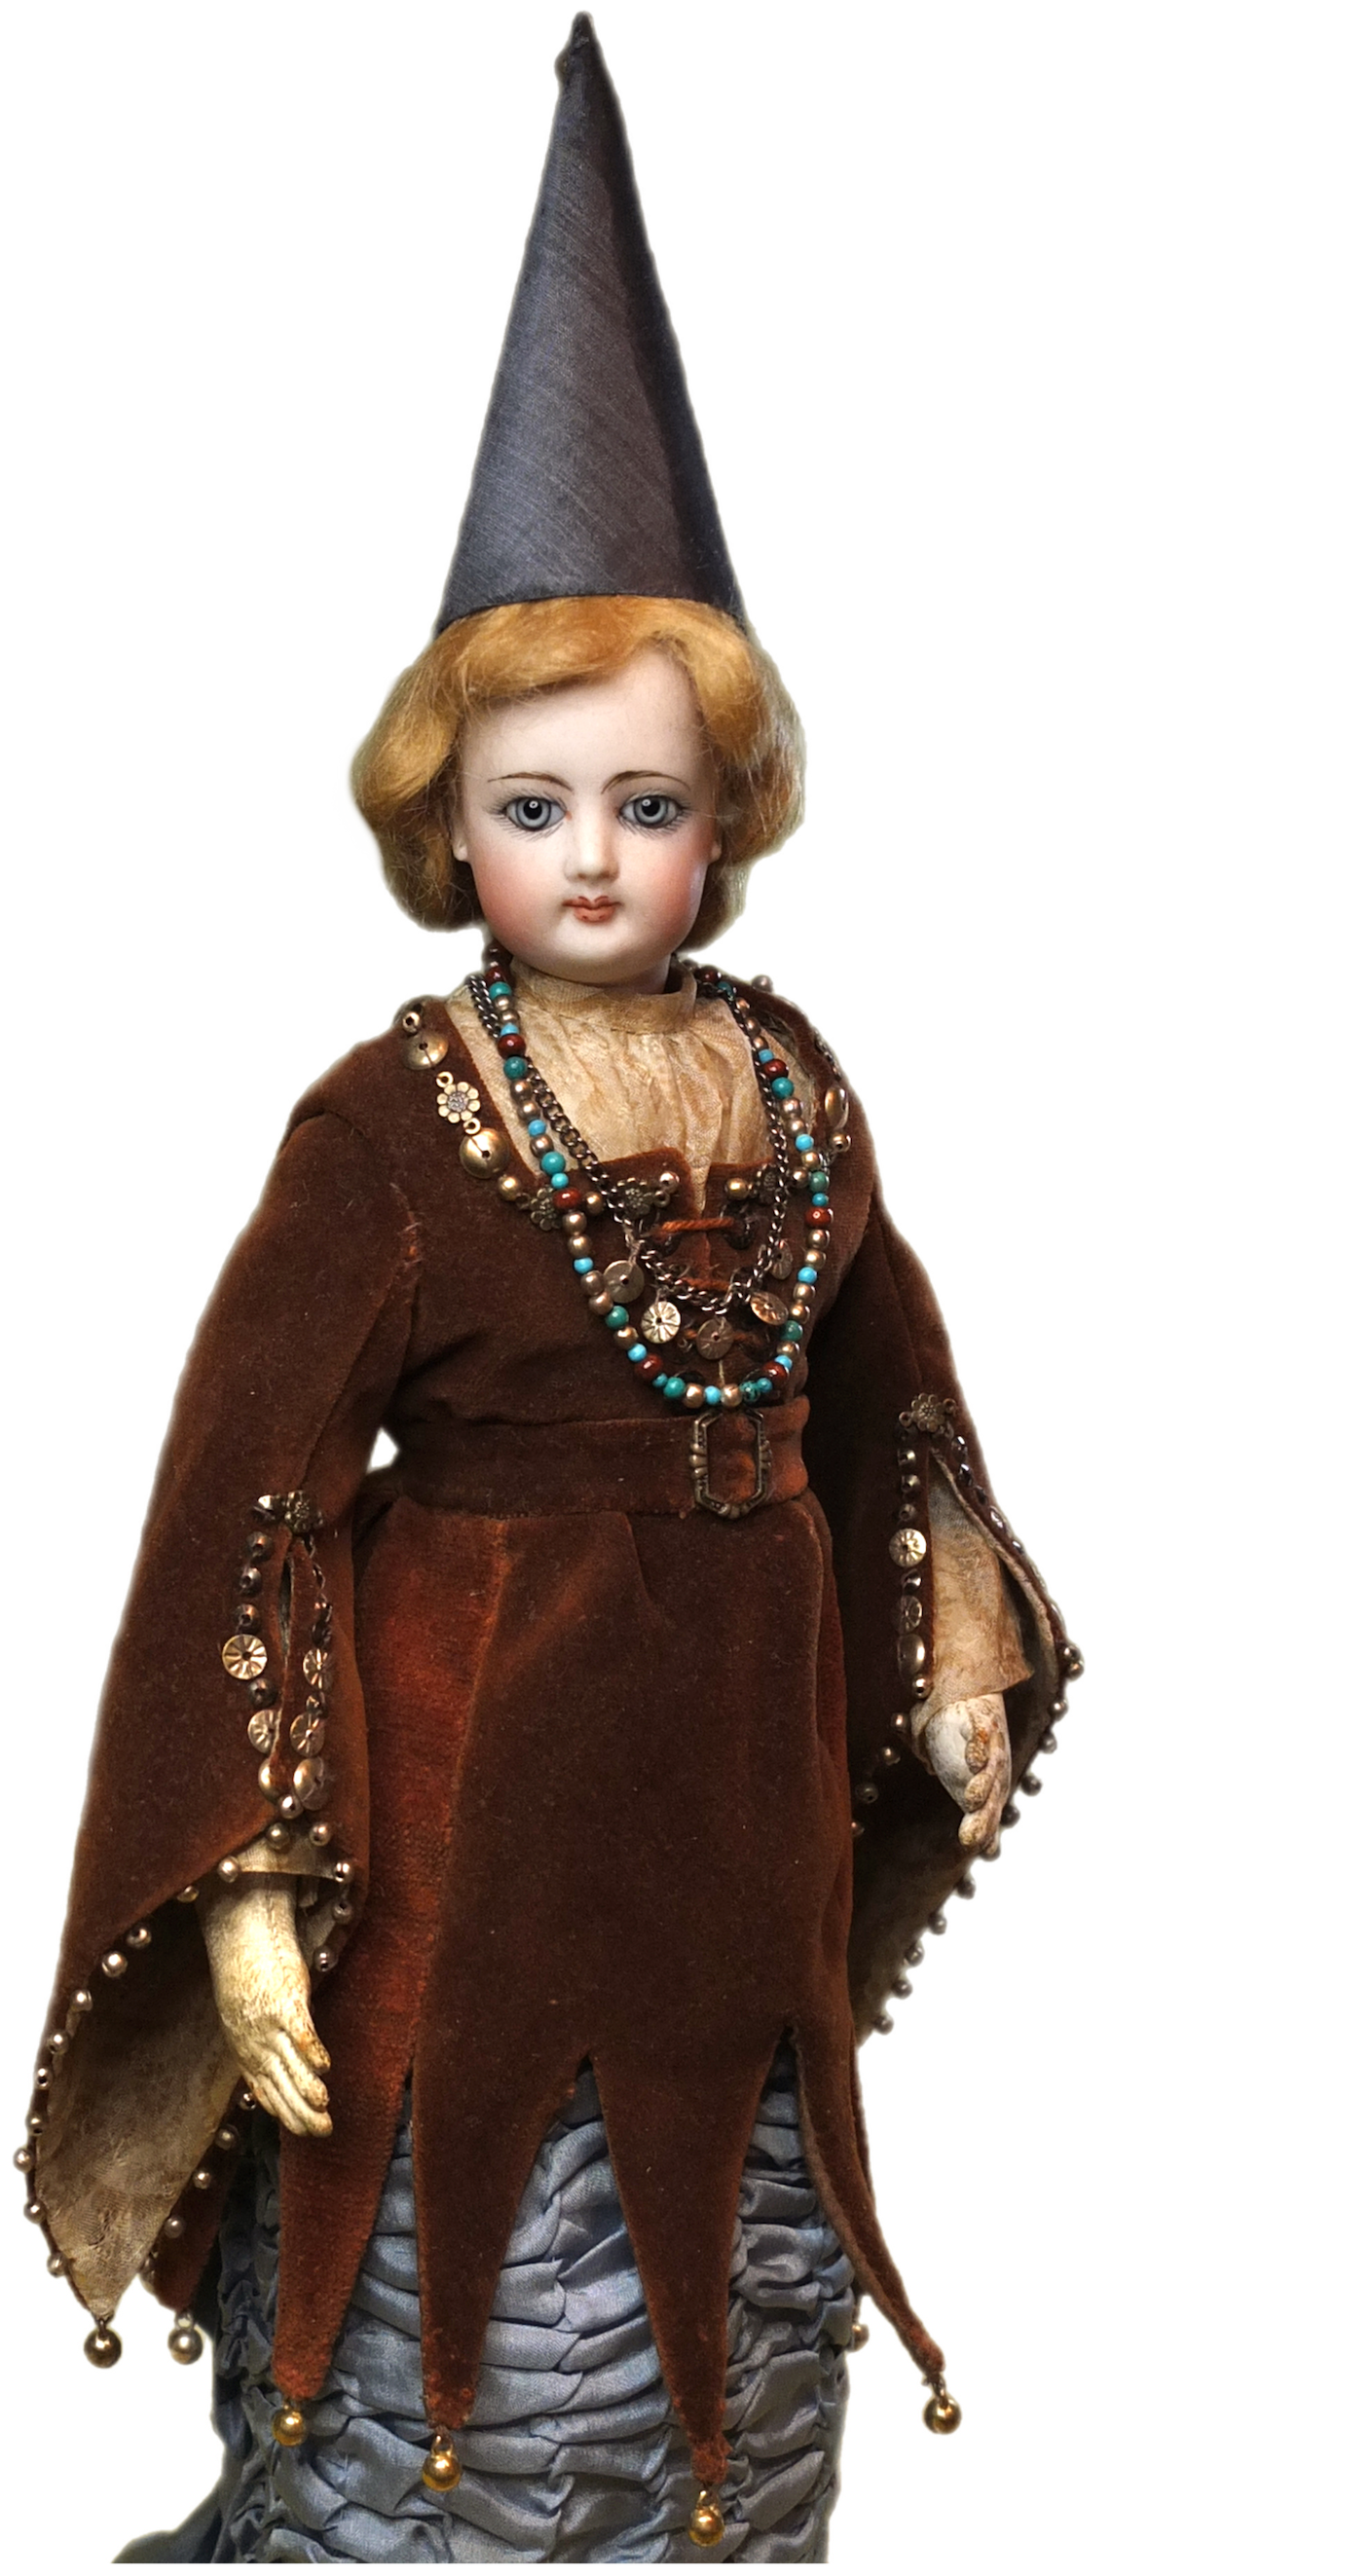 «Модная» кукла-дама фабрики Франсуа Готье. Франция, 1870-е гг. Частная коллекция. Из статьи Натальи Курочкиной «Костюм предсказательницы»